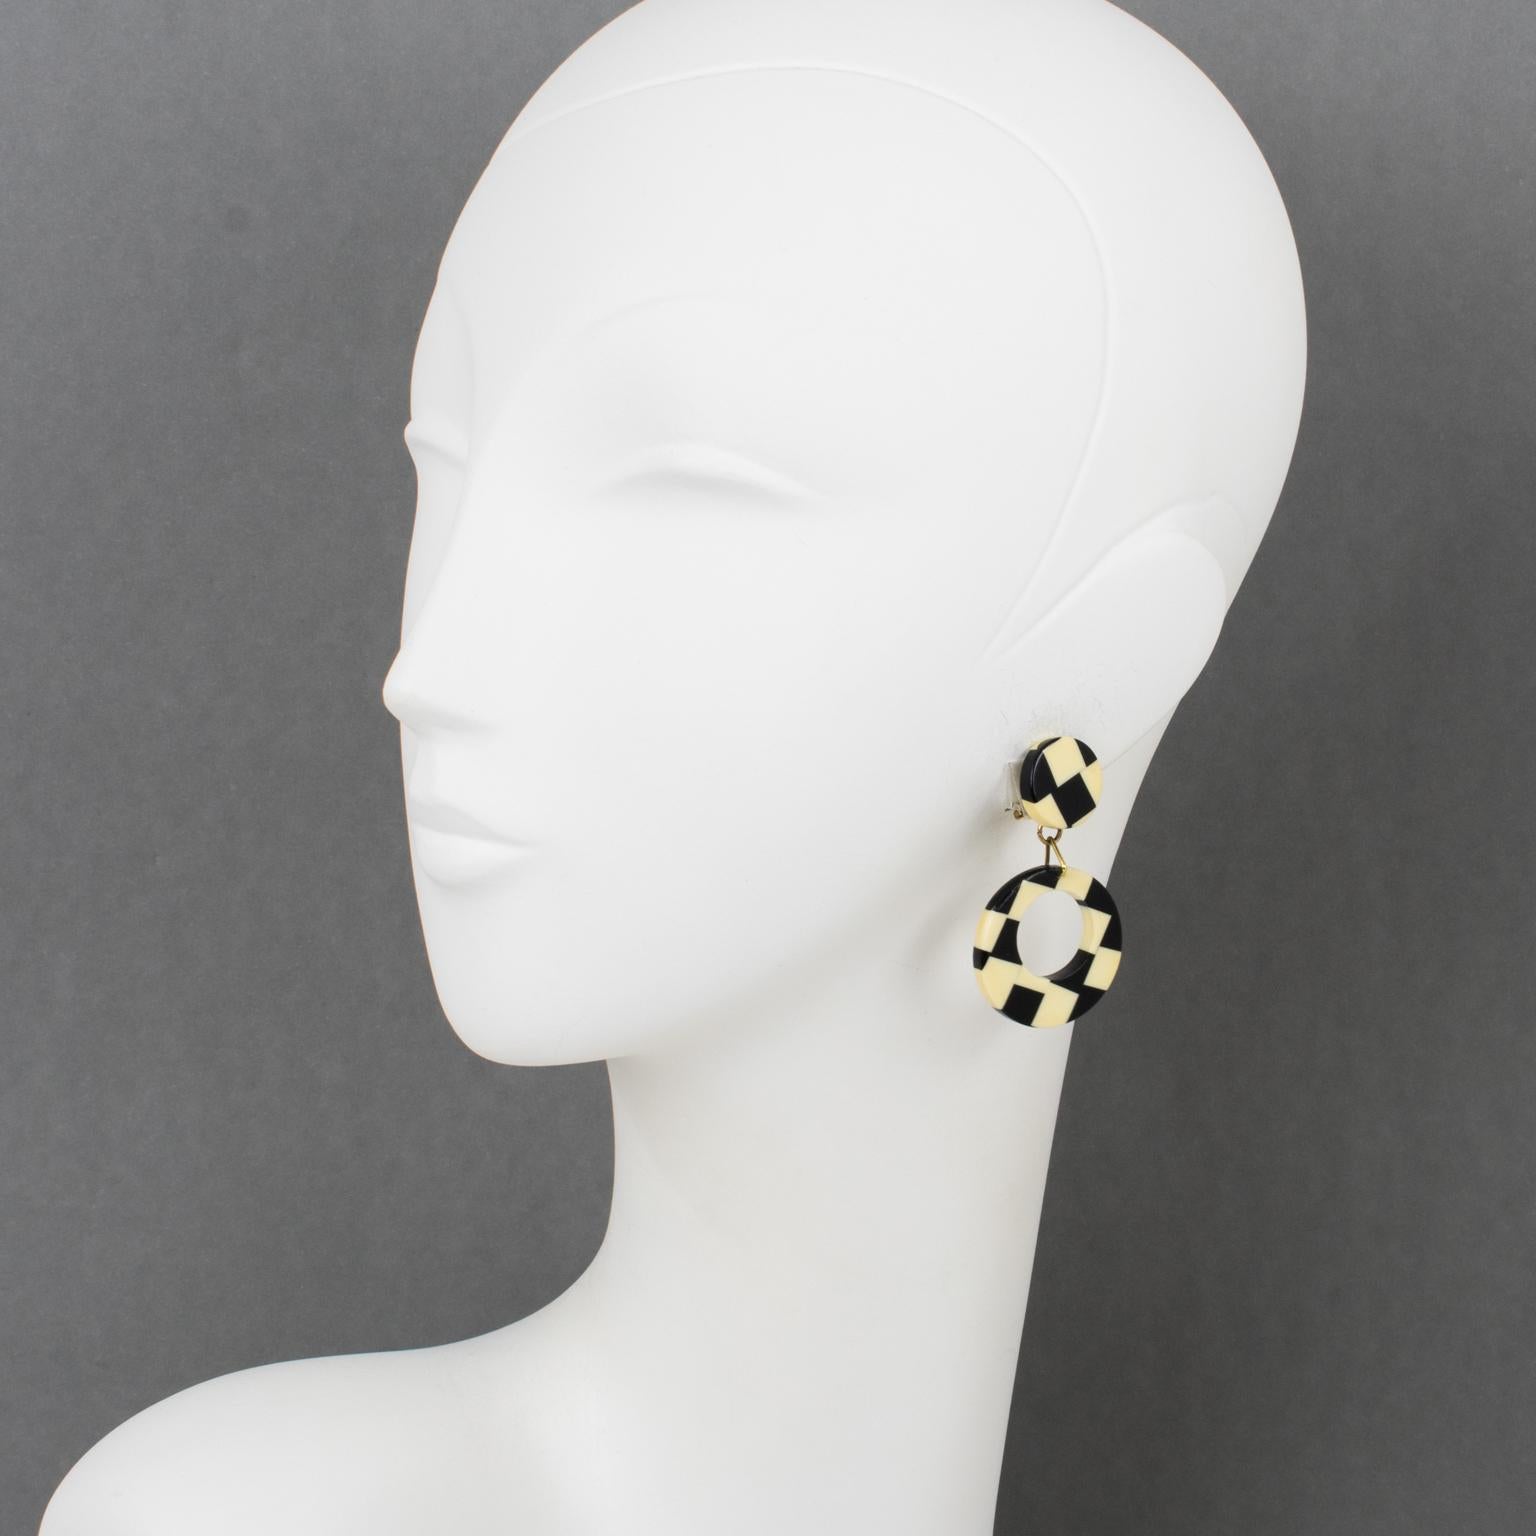 Diese atemberaubenden Pop-Art-Ohrringe aus den 1960er Jahren sind mit einem dreidimensionalen, baumelnden, geometrischen Donut-Muster aus Galalith mit einem wunderschönen schachbrettartigen Laminatmuster in Schwarz und Off-White versehen. Diese